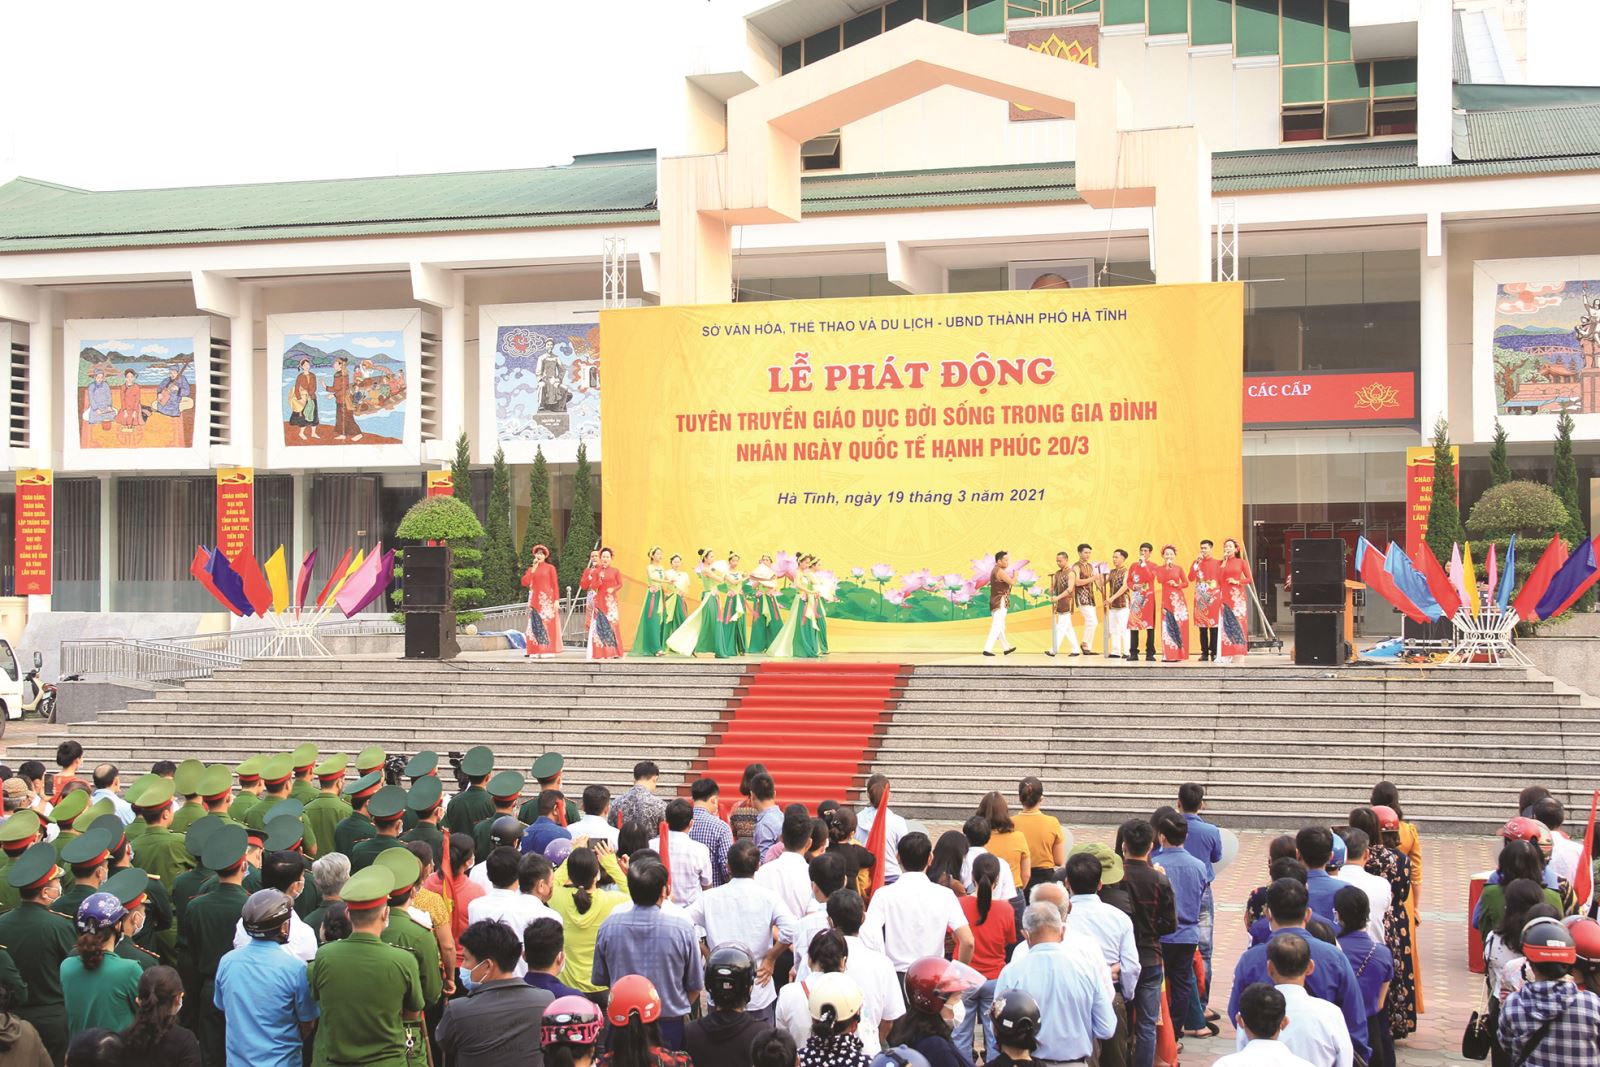 HÀ TĨNH: Tổ chức các hoạt động tuyên truyền nhân dịp kỷ niệm 20 năm Ngày Gia đình Việt Nam 